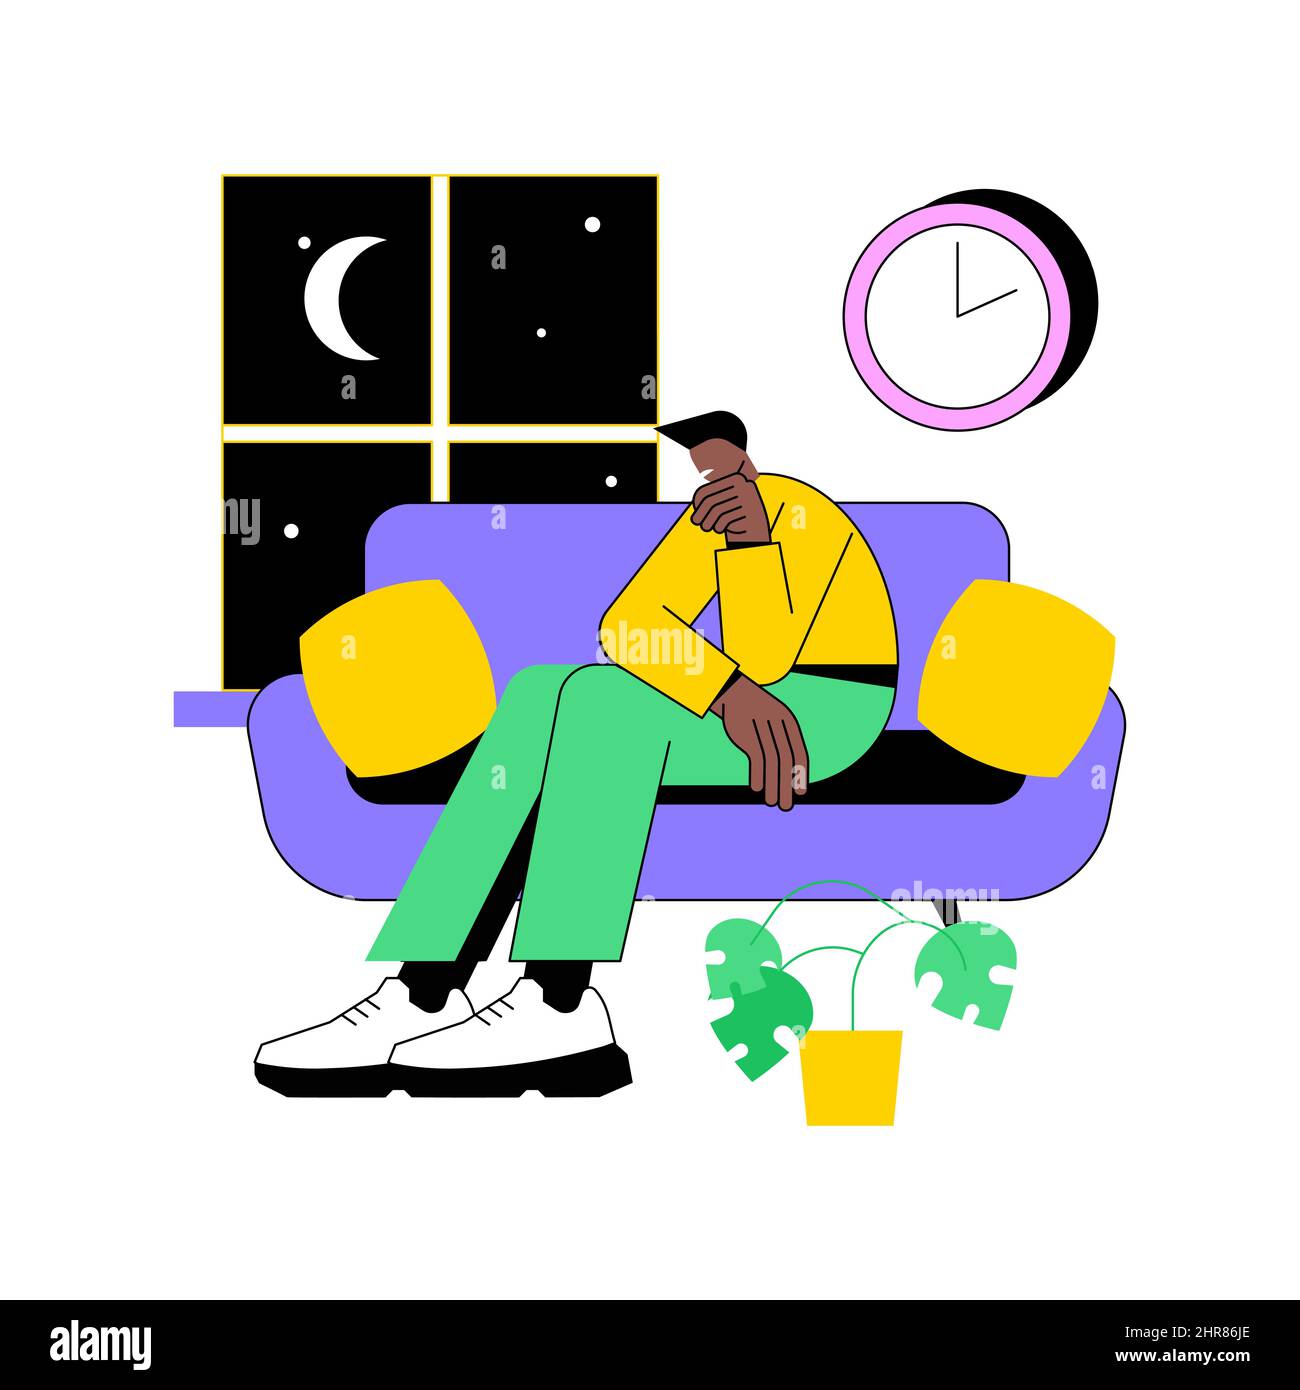 Illustrazione vettoriale astratta del concetto di privazione del sonno. Sintomi di insonnia, perdita del sonno, problema di privazione, salute mentale, causa e trattamento, diagnostica clinica, insonnia metafora astratta. Illustrazione Vettoriale